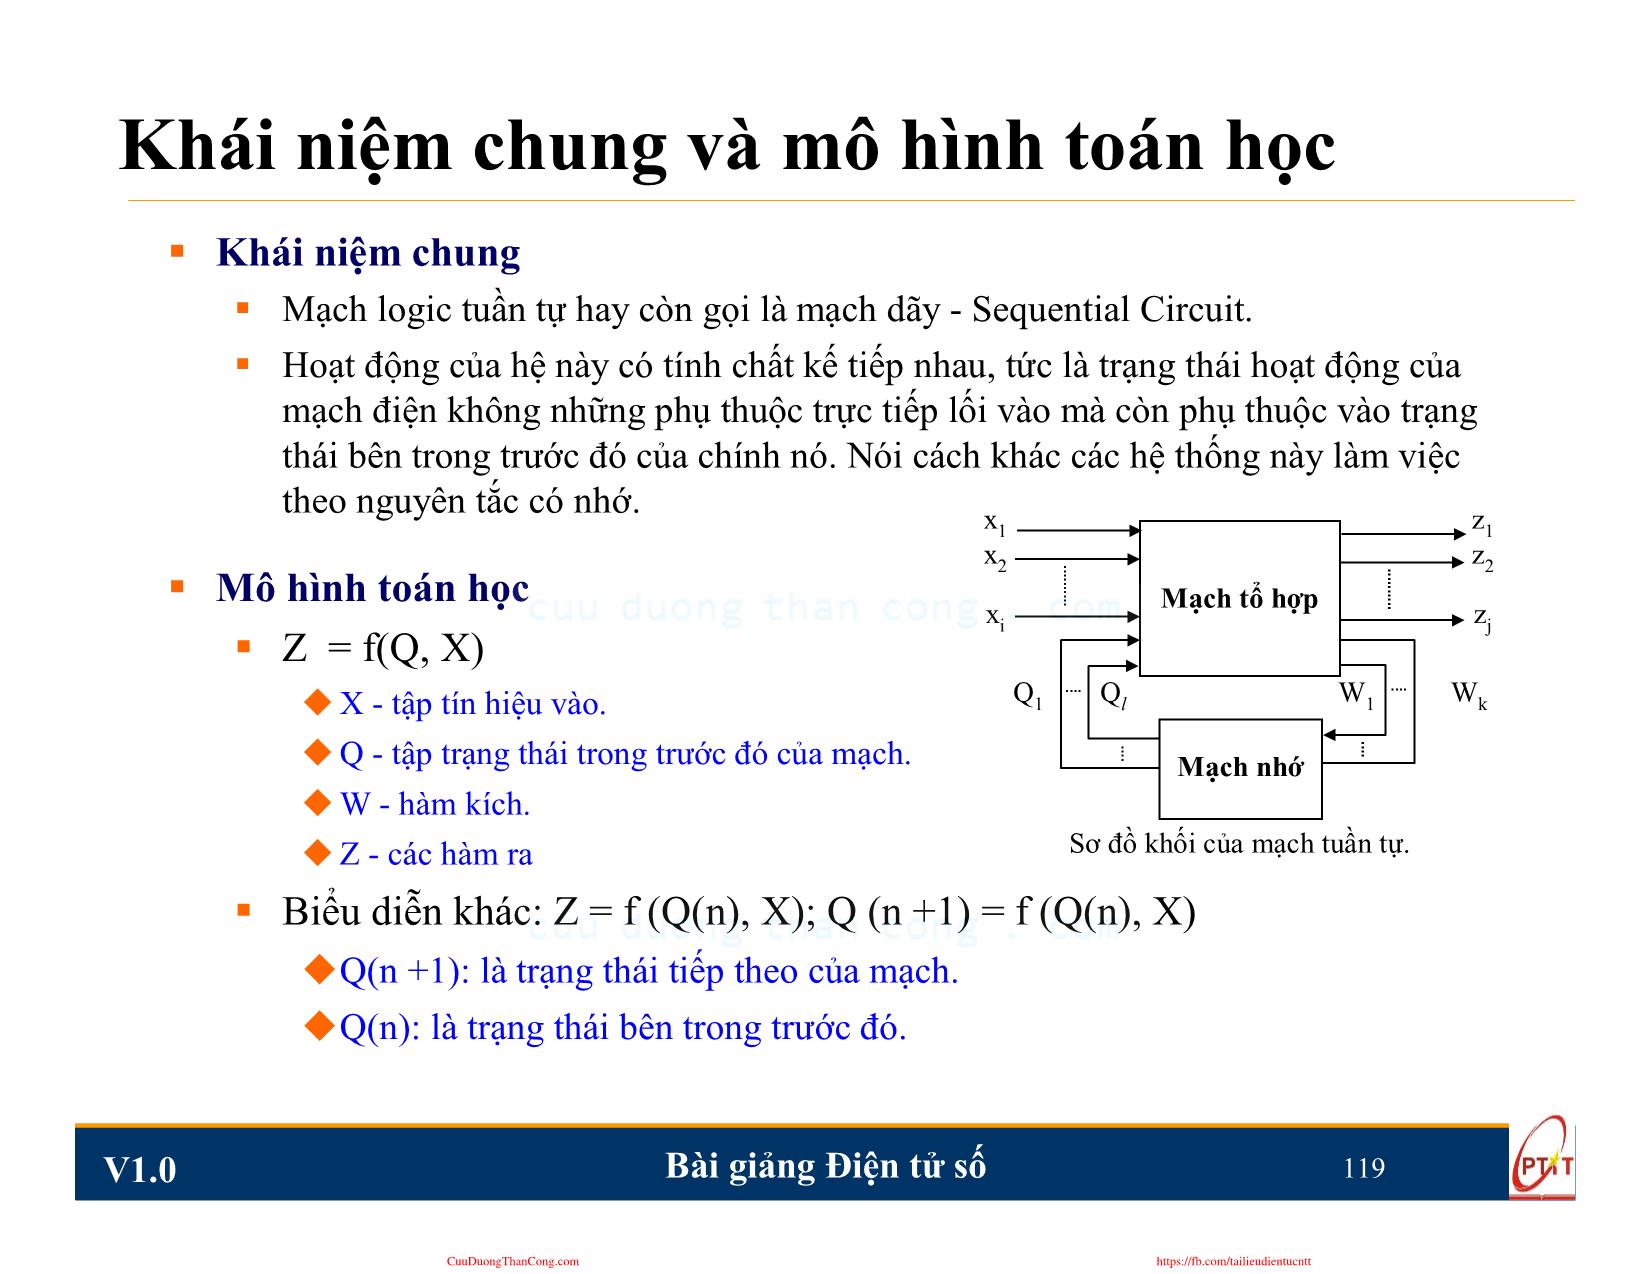 Bài giảng Điện tử số - Chương 5: Mạch logic tuần tự - Nguyễn Trung Hiếu trang 4